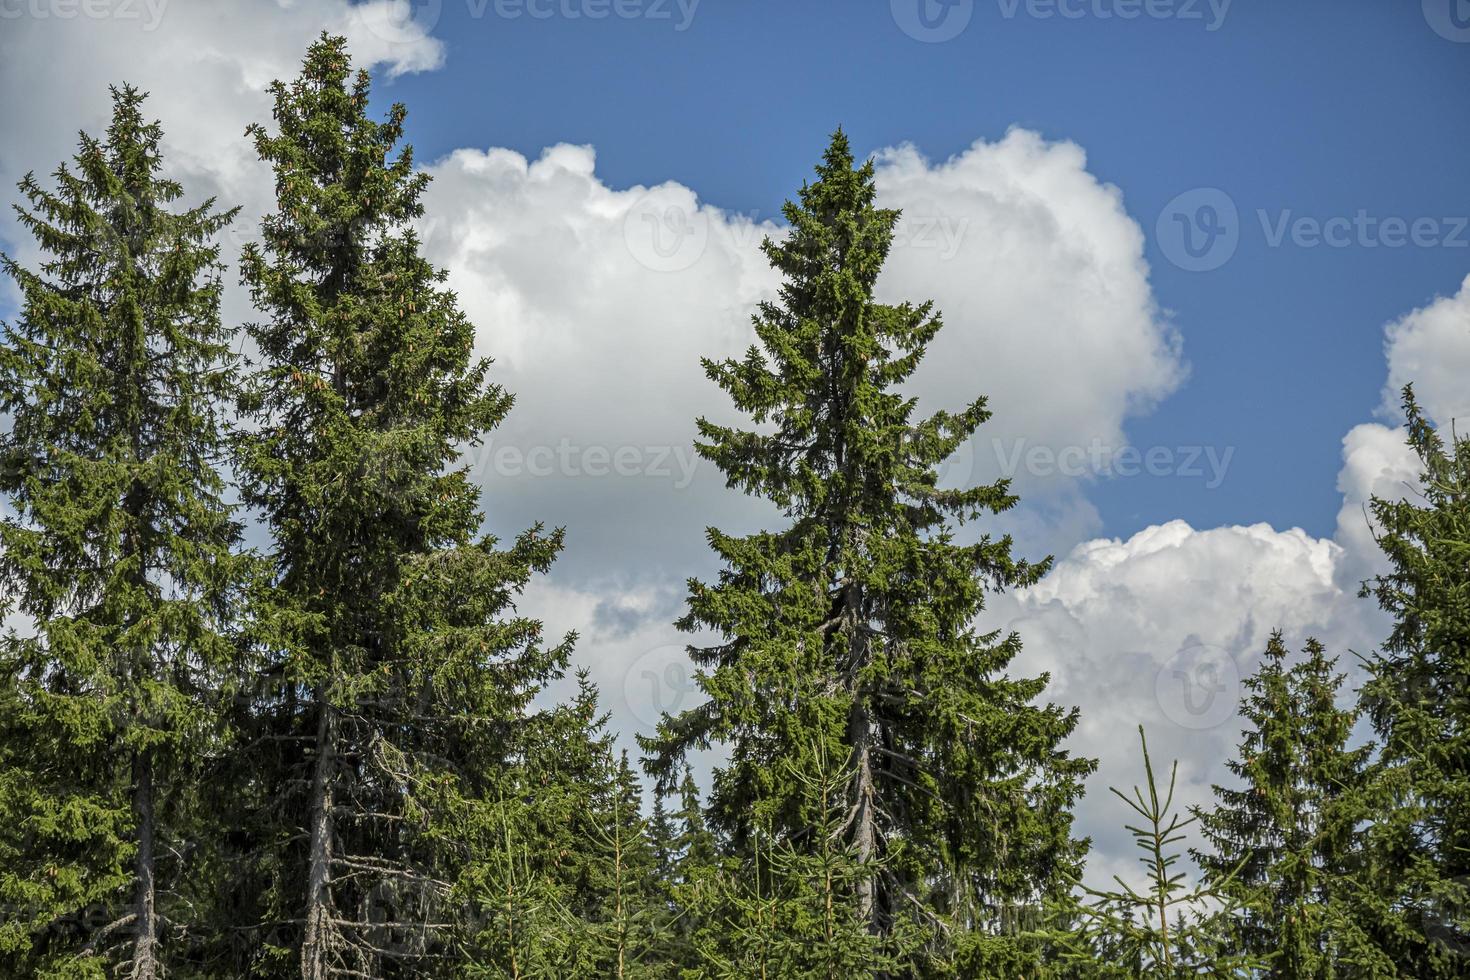 céu azul brilhante e espessa camada de nuvens brancas e fofas flutuando acima da montanha verde na bulgária. foto